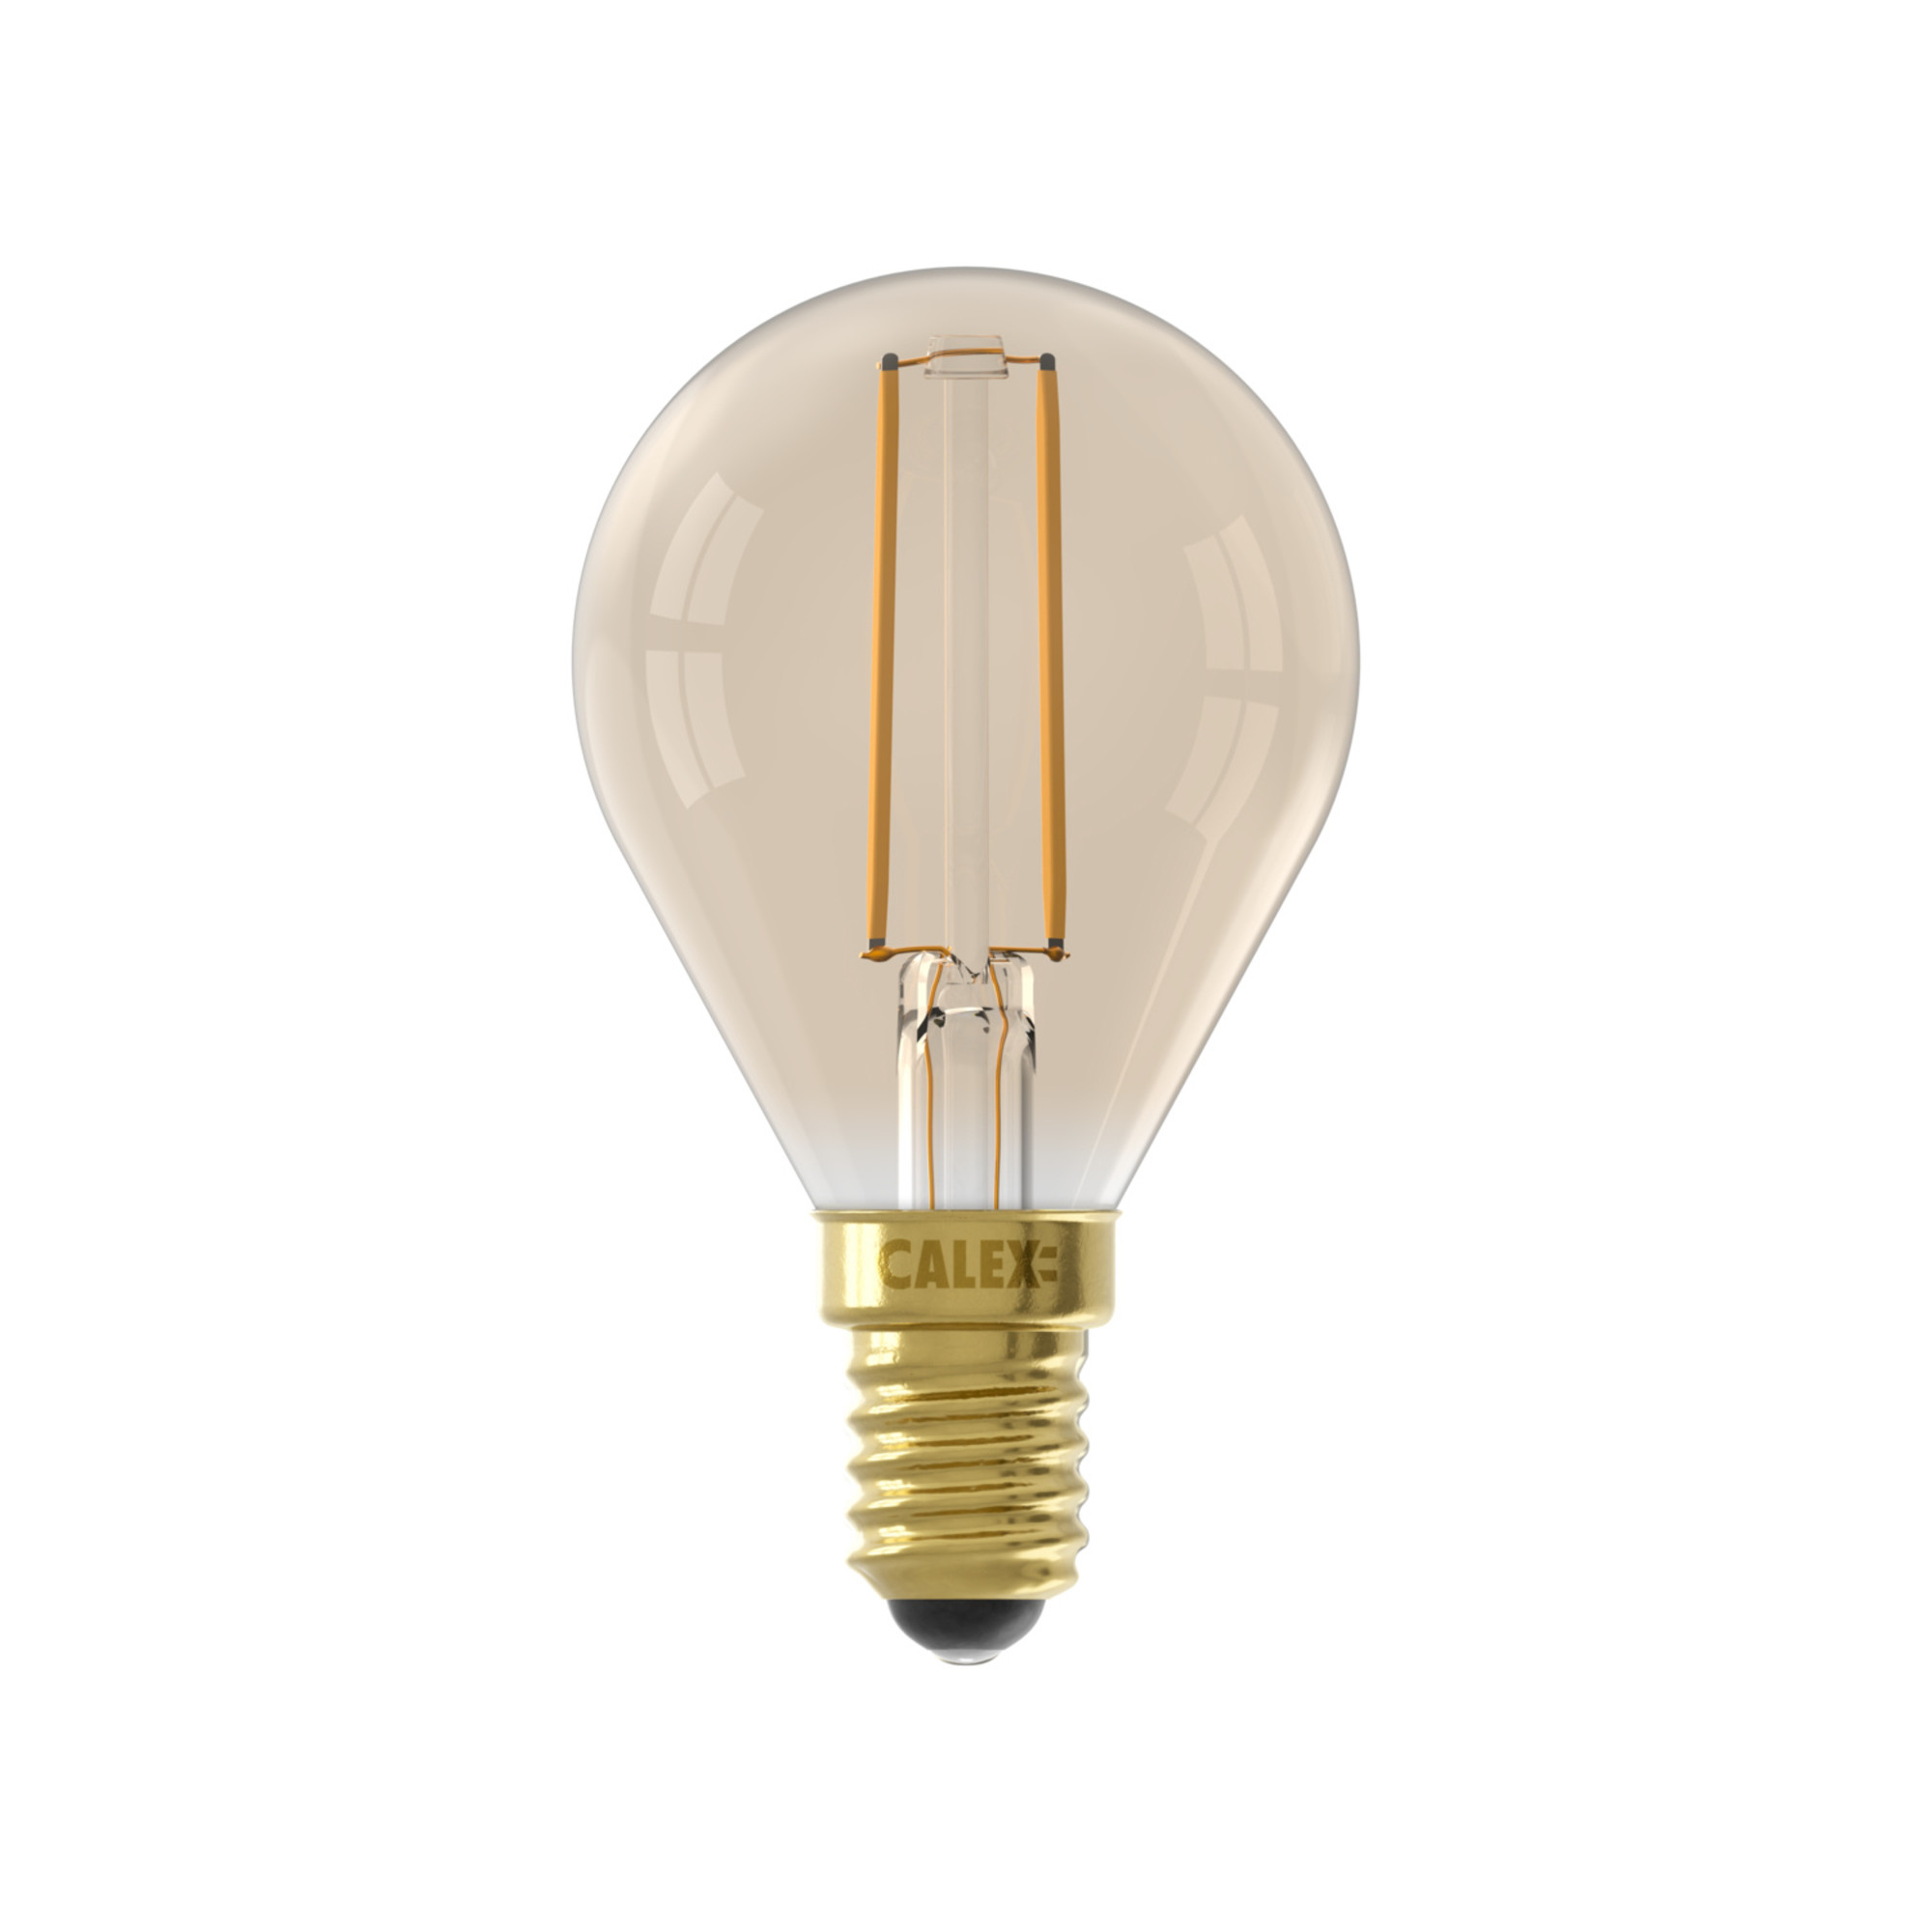 Niet doen Kapper verwijderen Spherical LED Lamp Warm - E14 - 200 Lm - Goud Finish - Lightexpert.nl